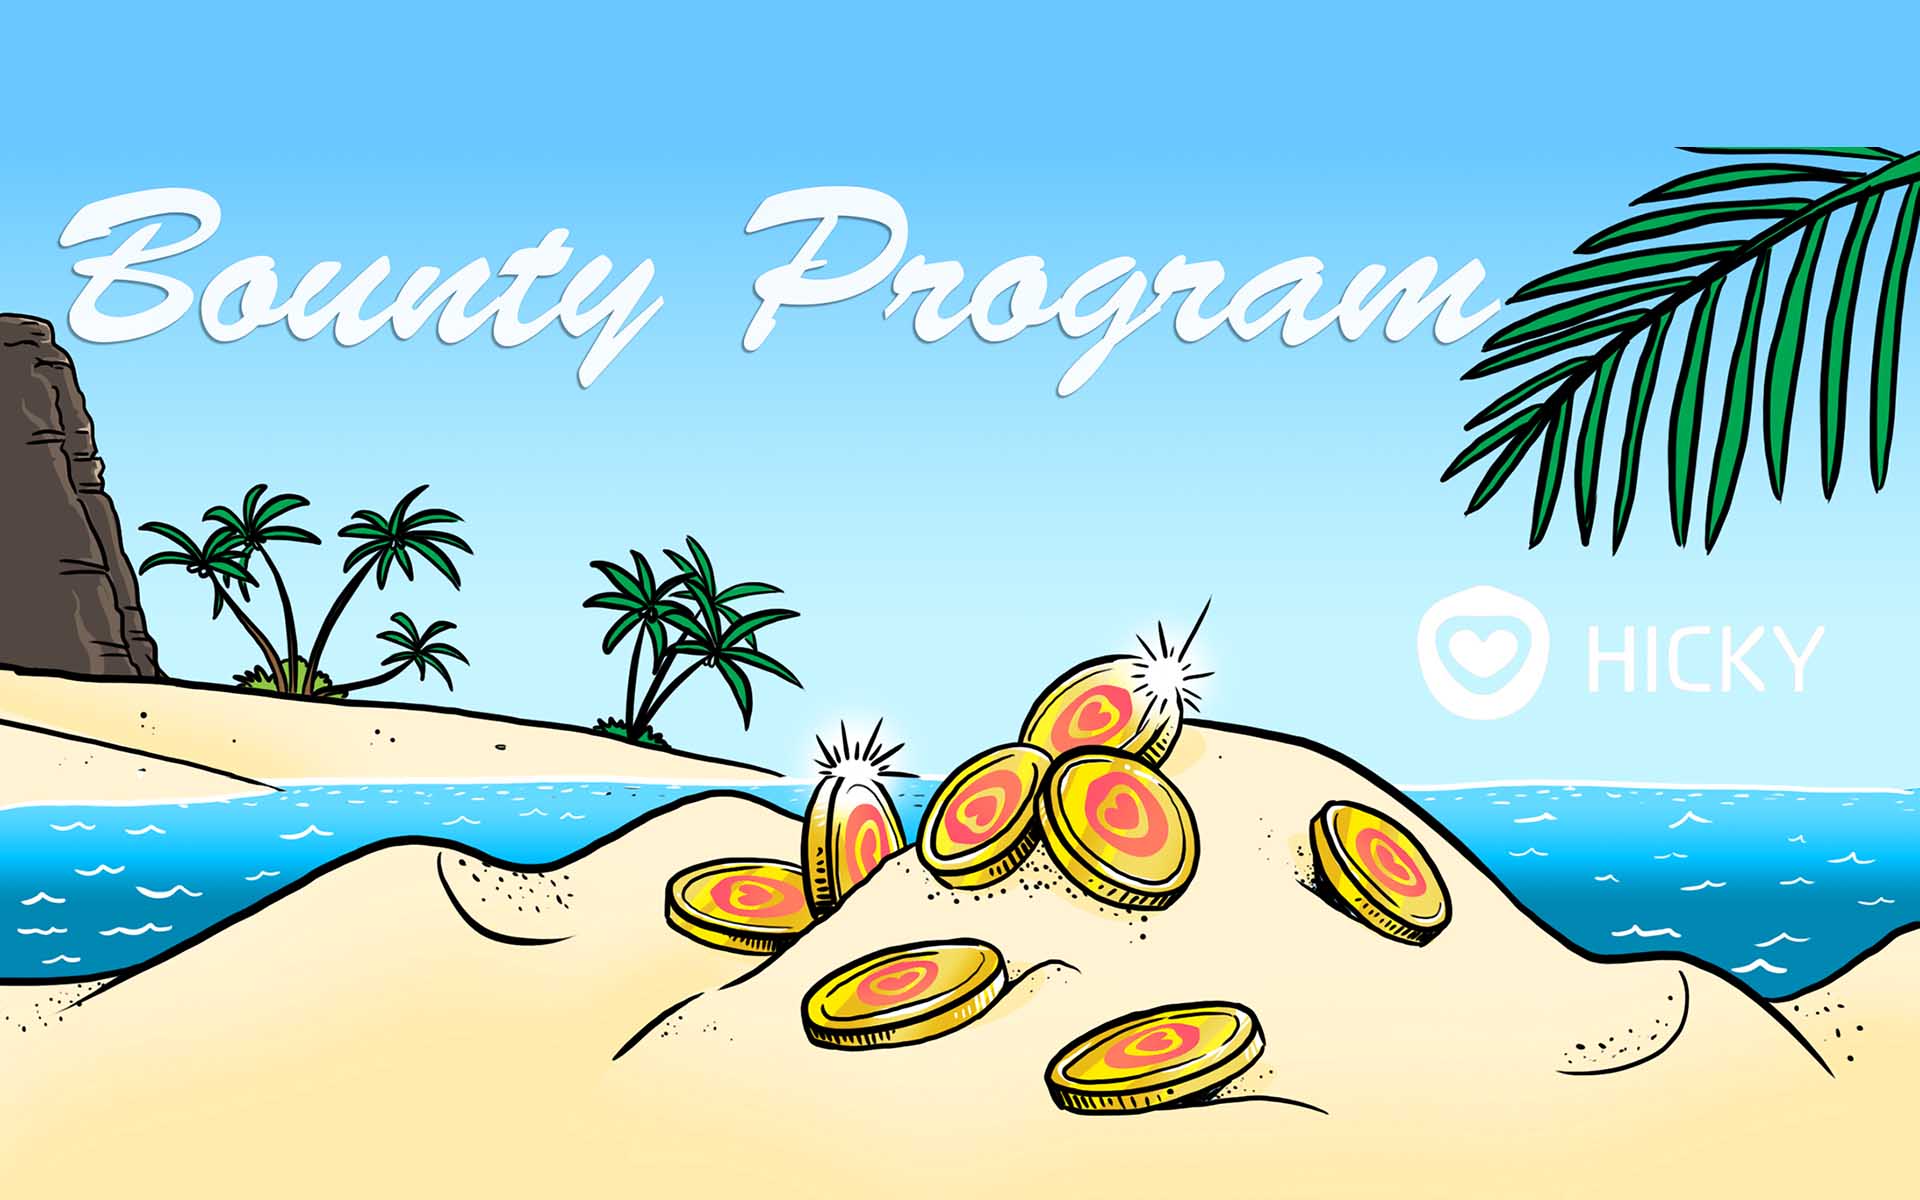 Hicky Team Announce Their Bounty Program